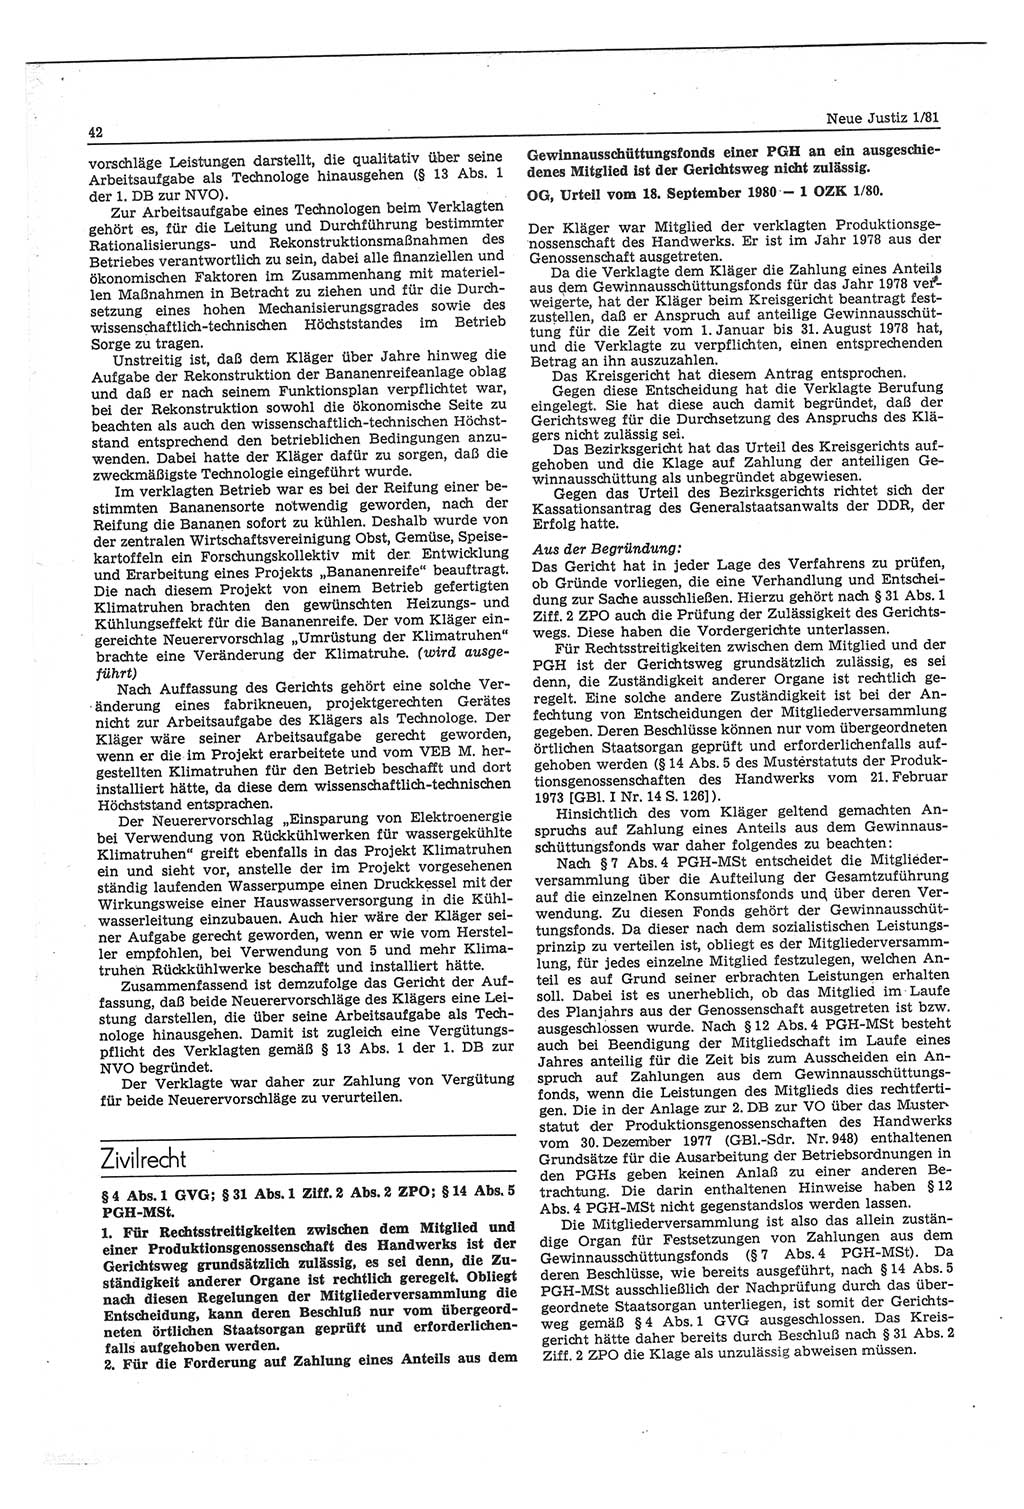 Neue Justiz (NJ), Zeitschrift für sozialistisches Recht und Gesetzlichkeit [Deutsche Demokratische Republik (DDR)], 35. Jahrgang 1981, Seite 42 (NJ DDR 1981, S. 42)